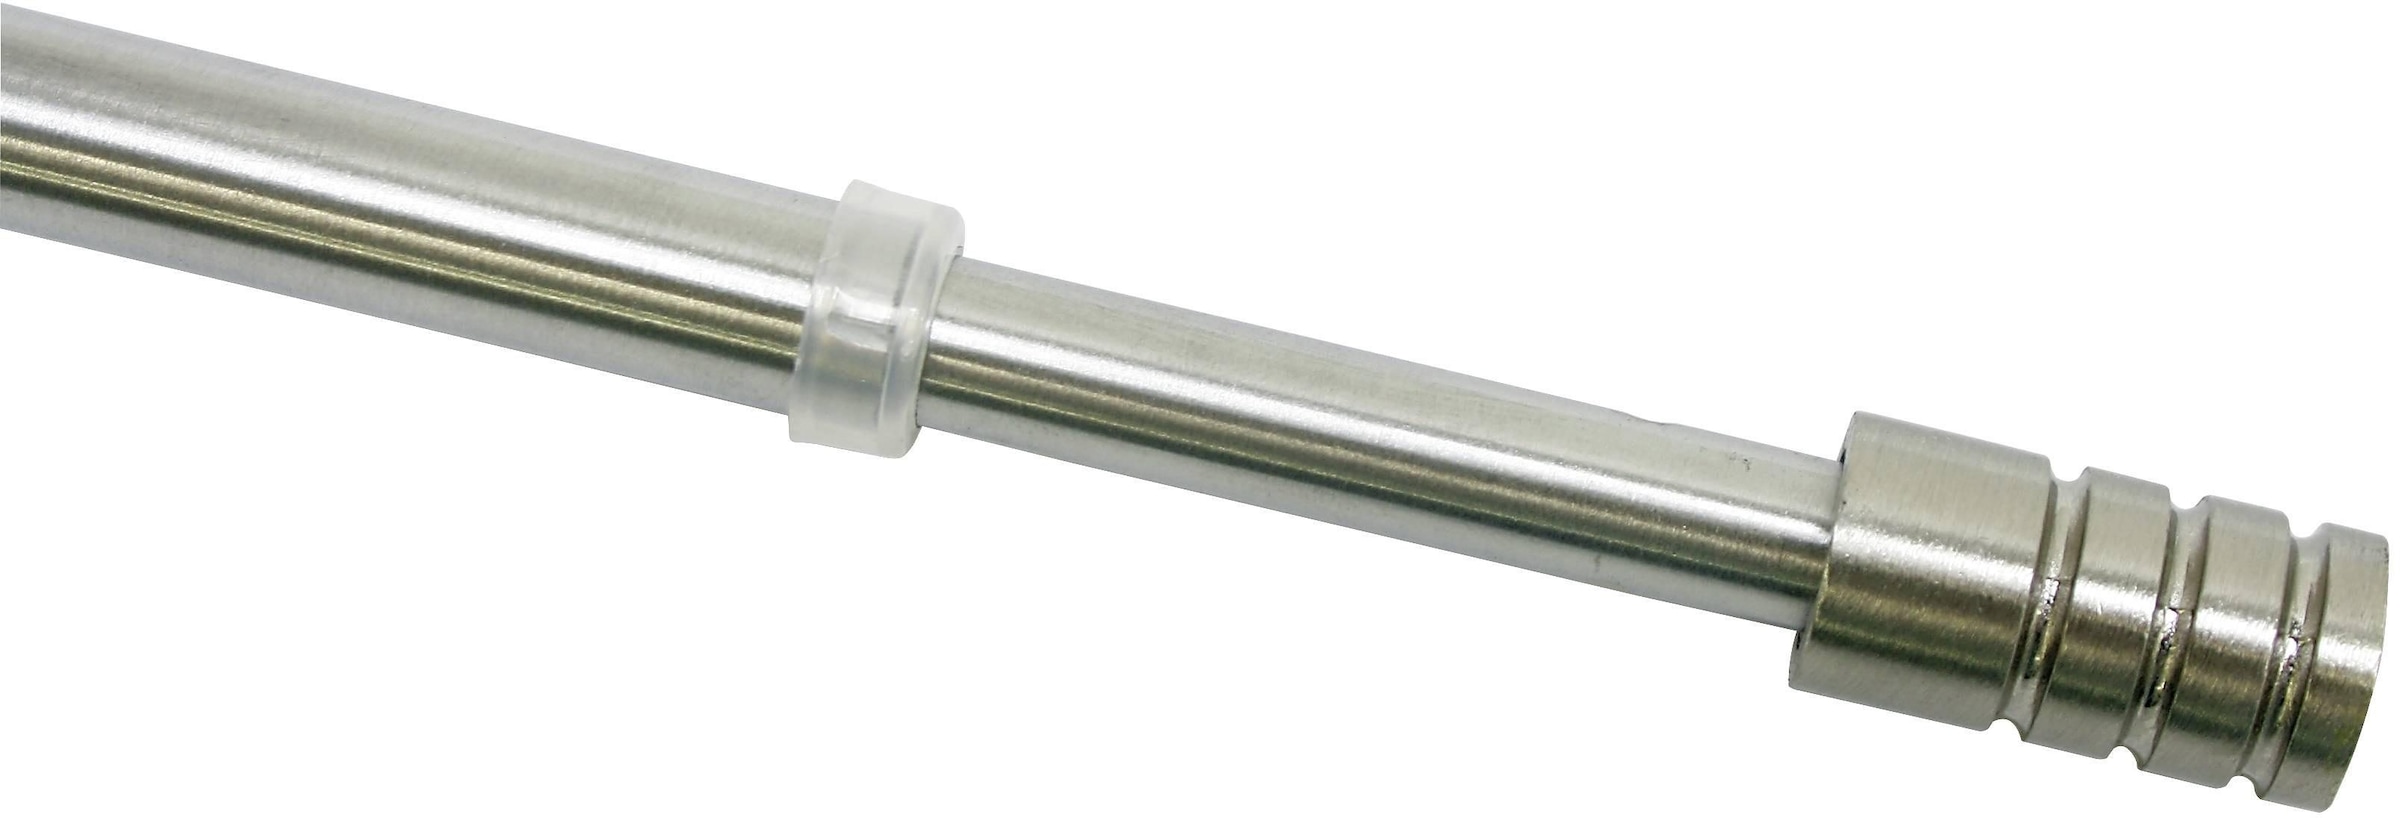 GARDINIA Vitragenstange, 1 mm Serie Ø Vitragestange 10 ausziehbar, läufig-läufig, kaufen jetzt Zylinder